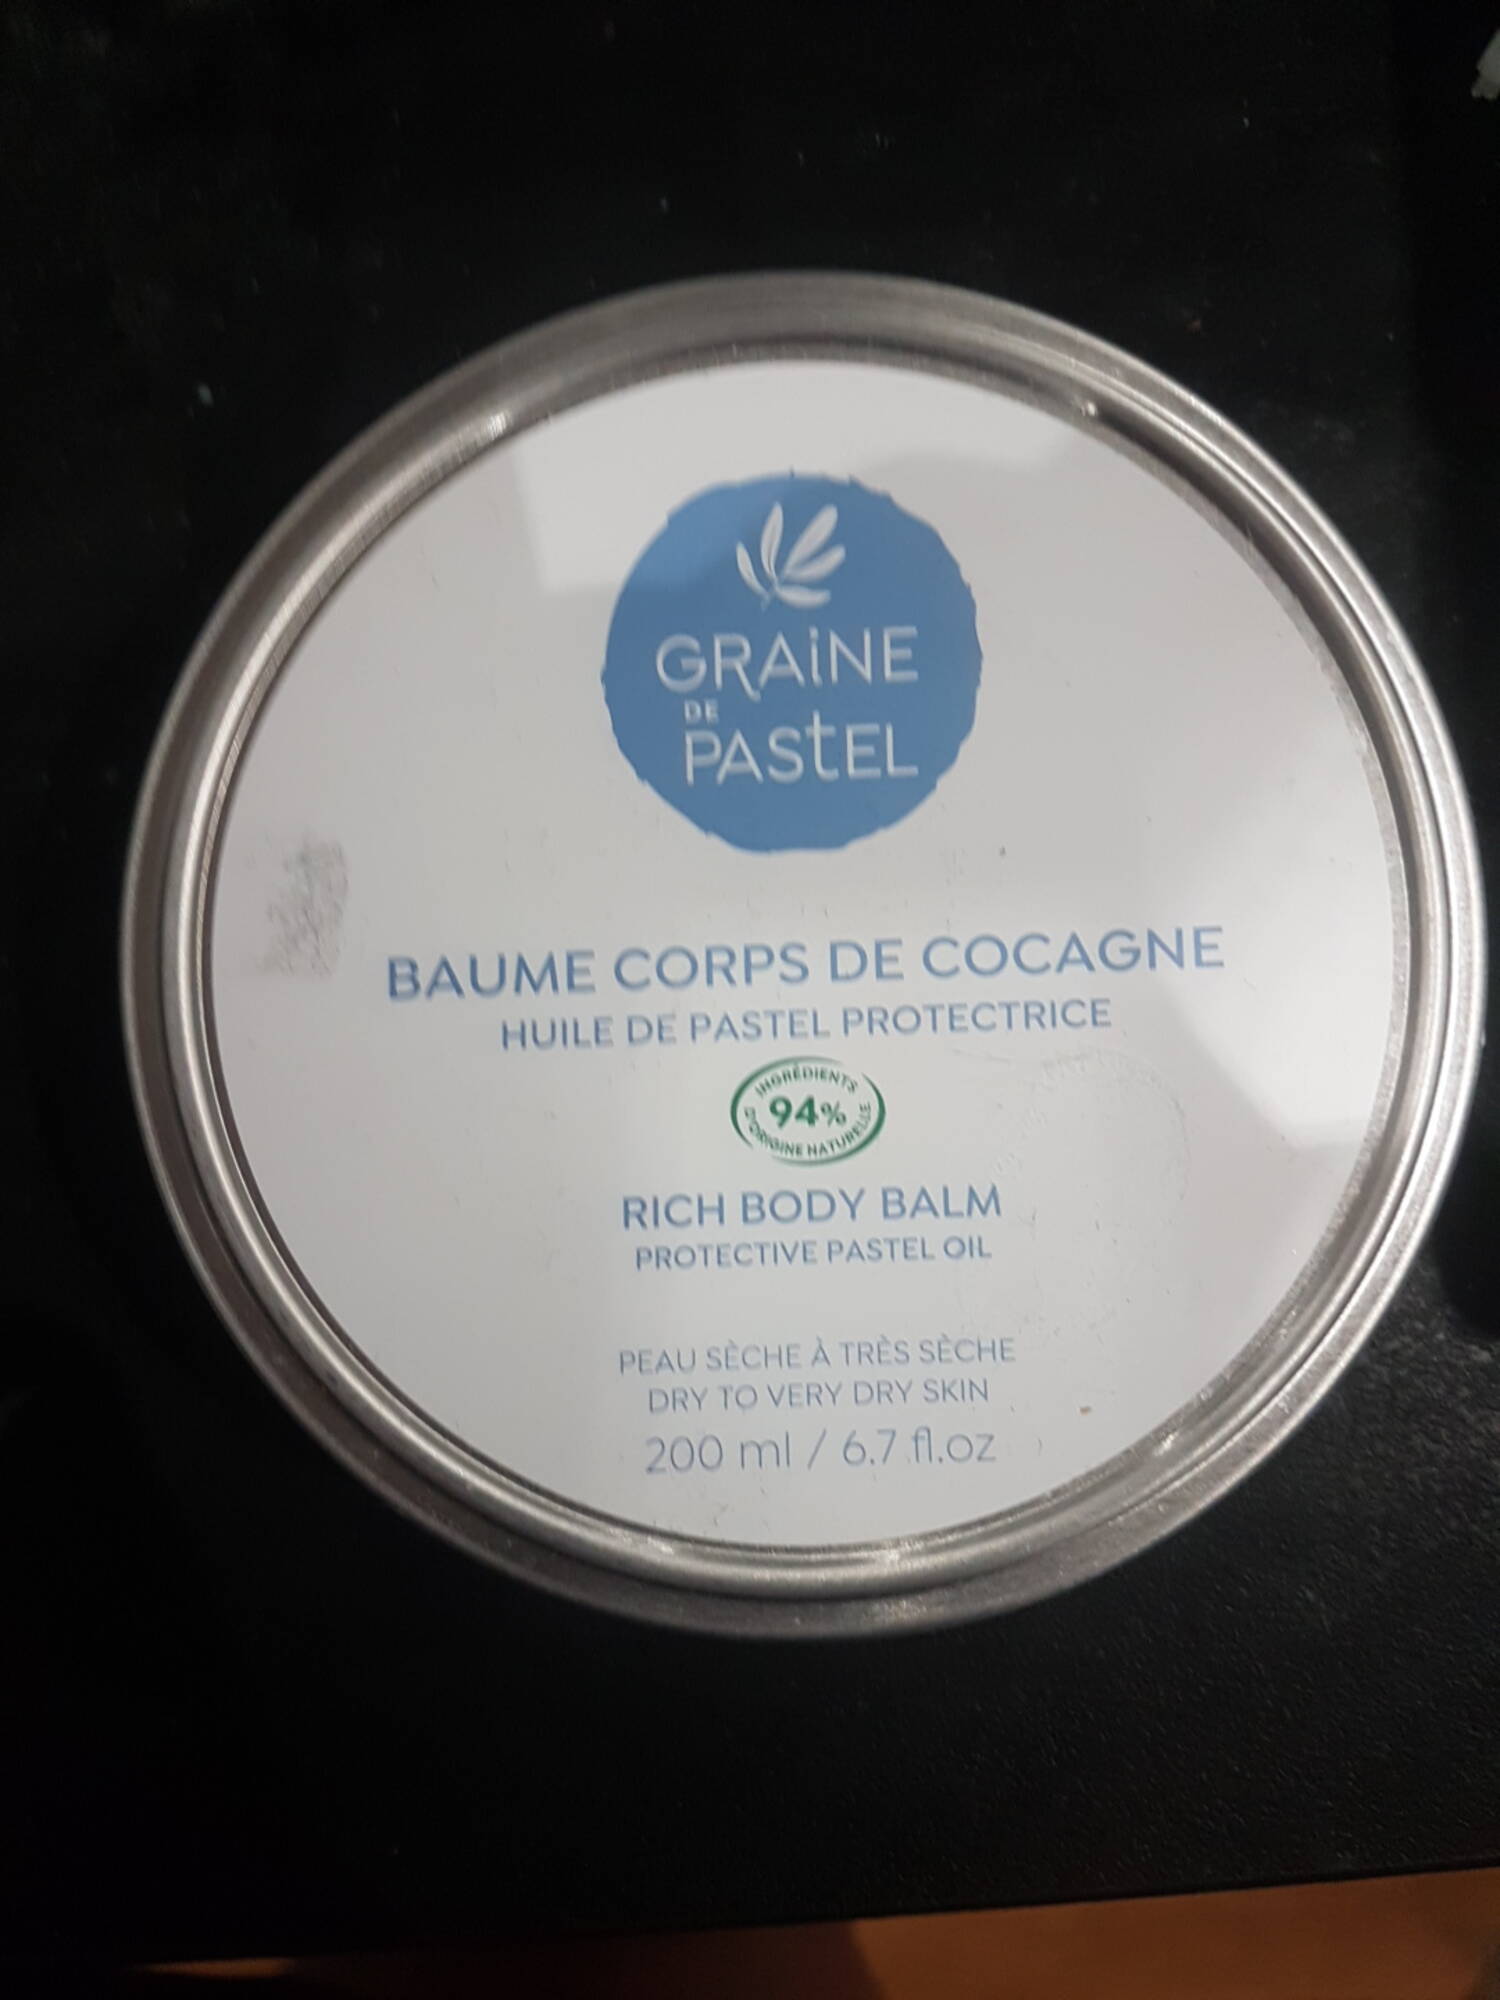 GRAINE DE PASTEL - Baume corps de cocagne